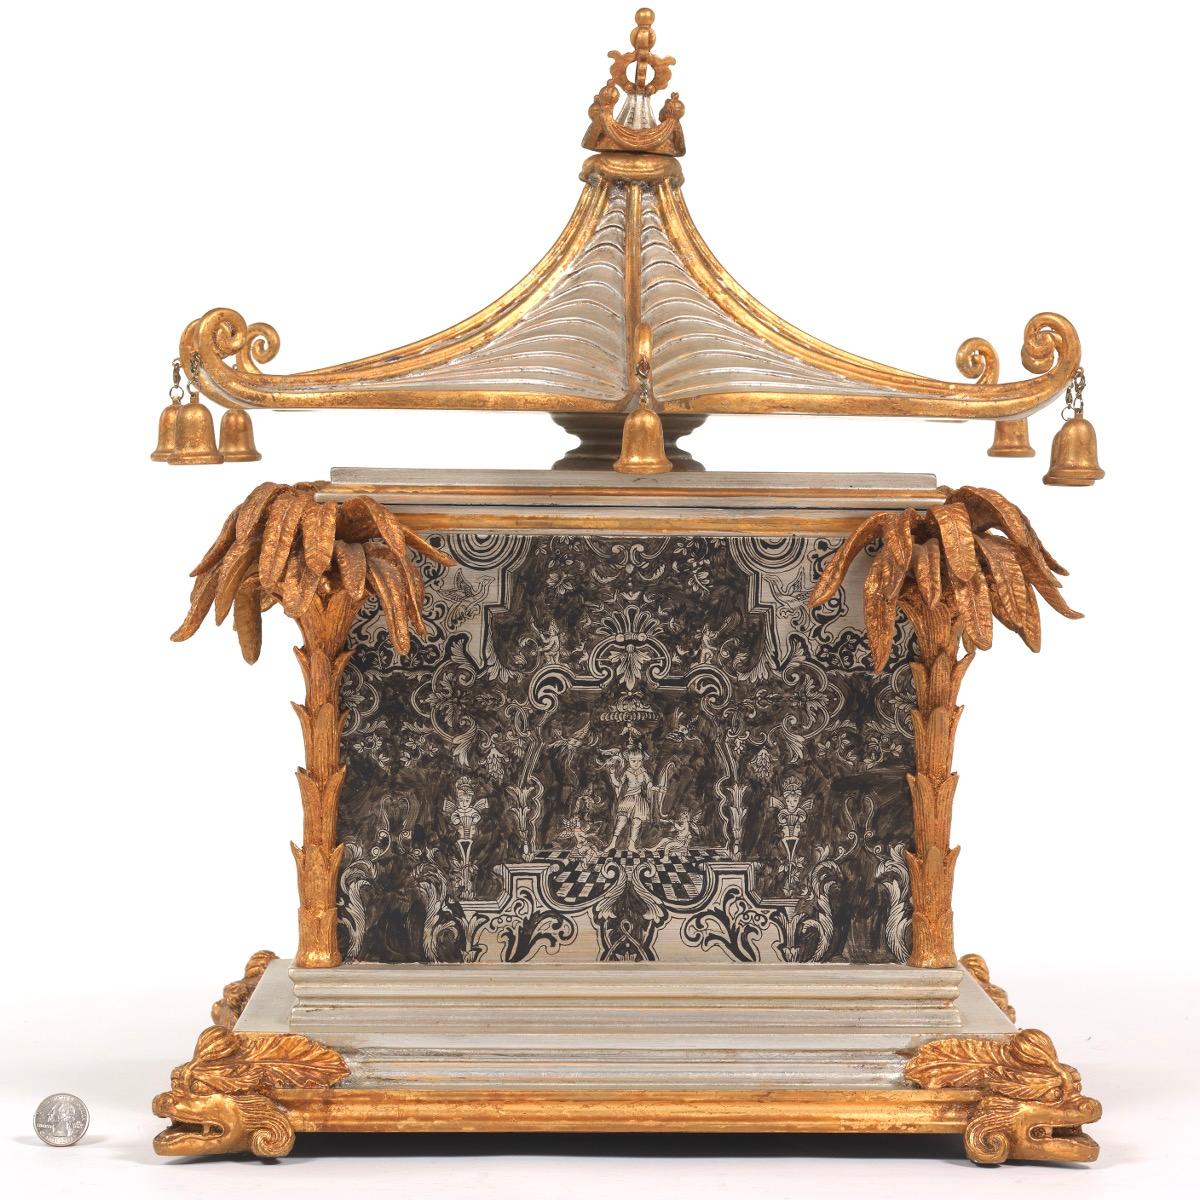 Oriental Pavilion Vanity Casket with En Grisaille style decoration measures 20